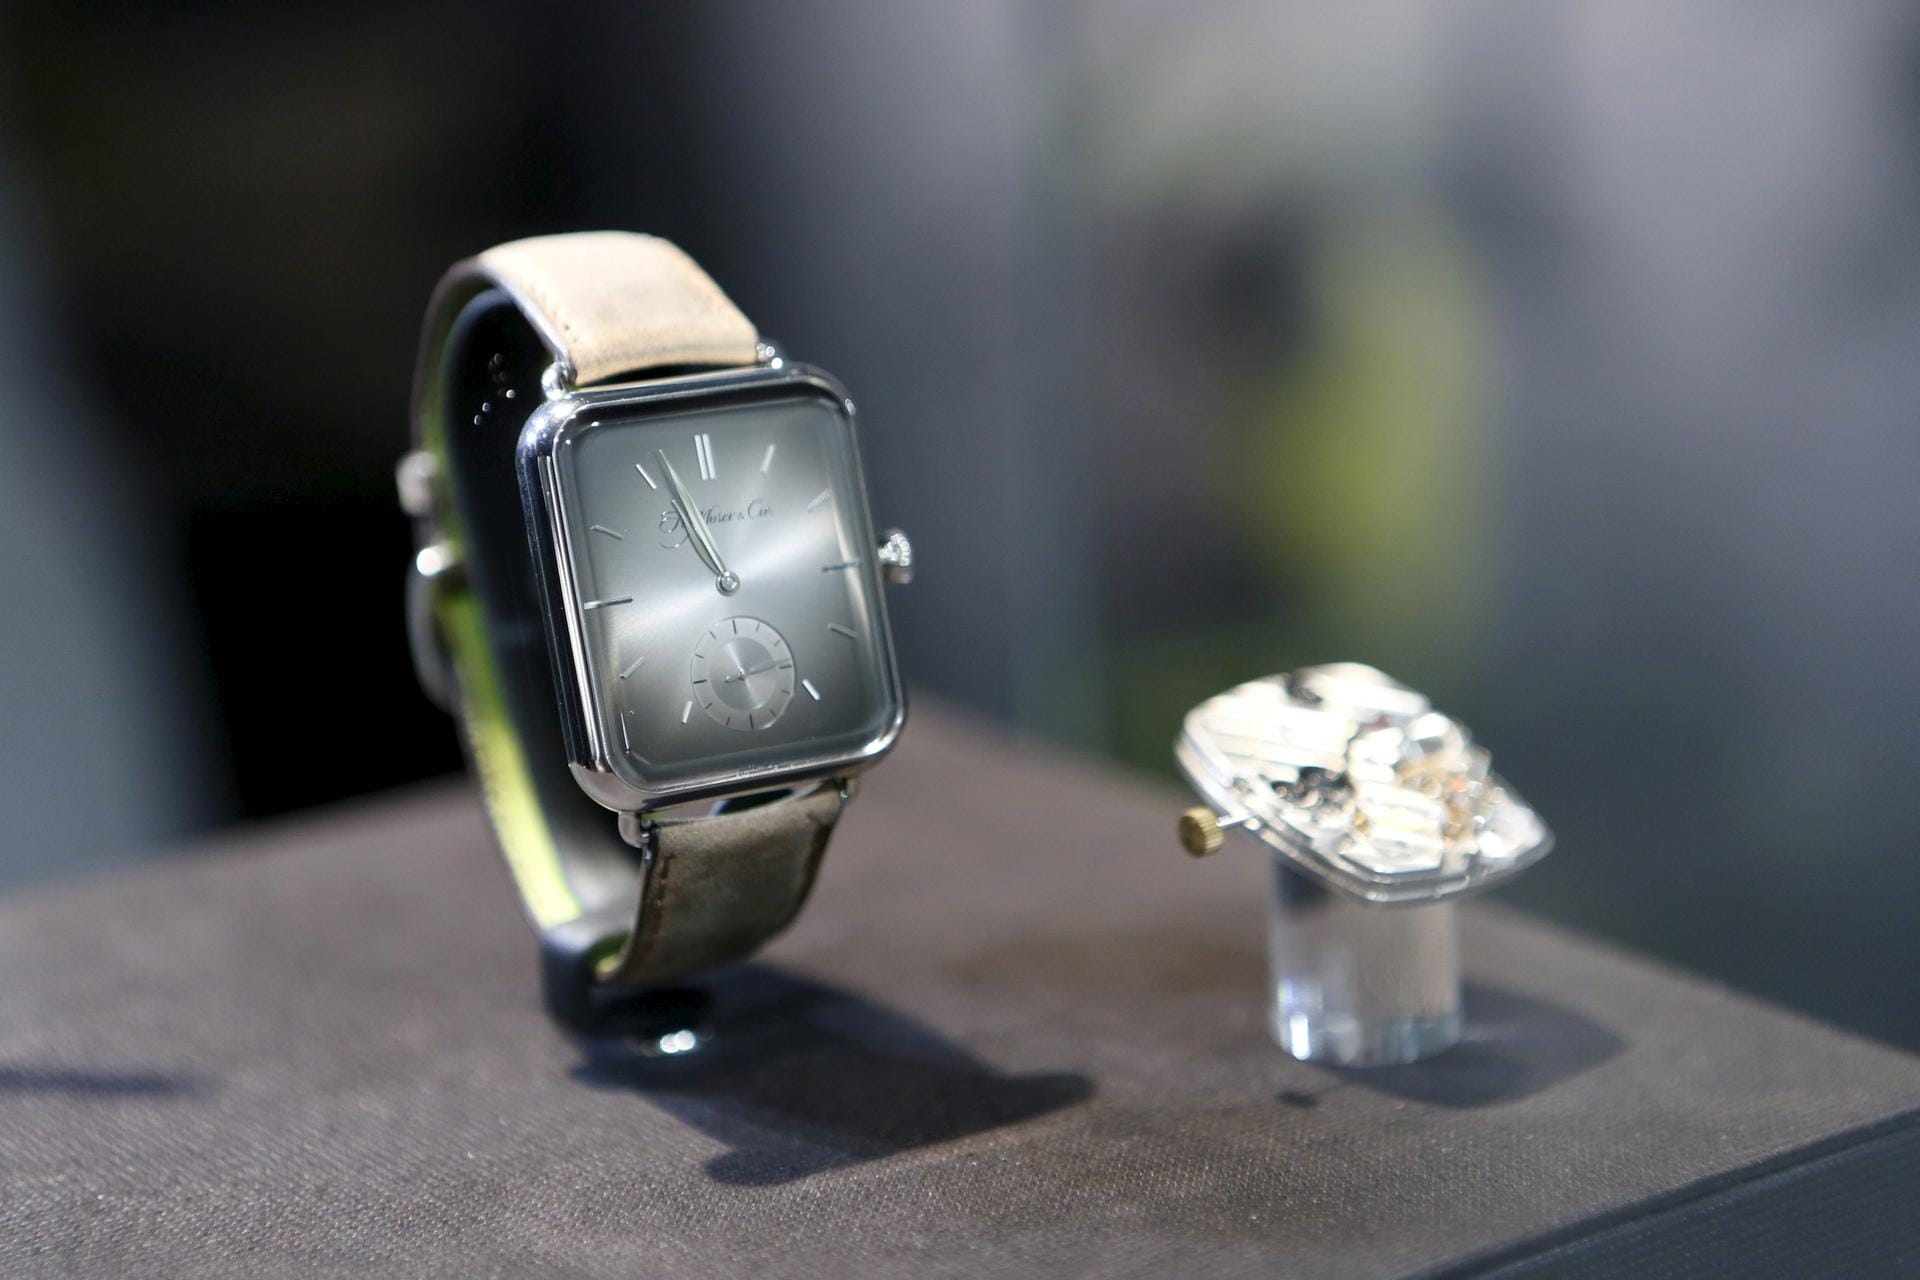 Ein Hingucker ist die Swiss Alp Watch der kleinen Maufaktur H. Moser & Cie. Die Uhr ähnelt der Apple Watch ist aber ein mechanisches Konstrukt und kostet rund 25.000 Euro.